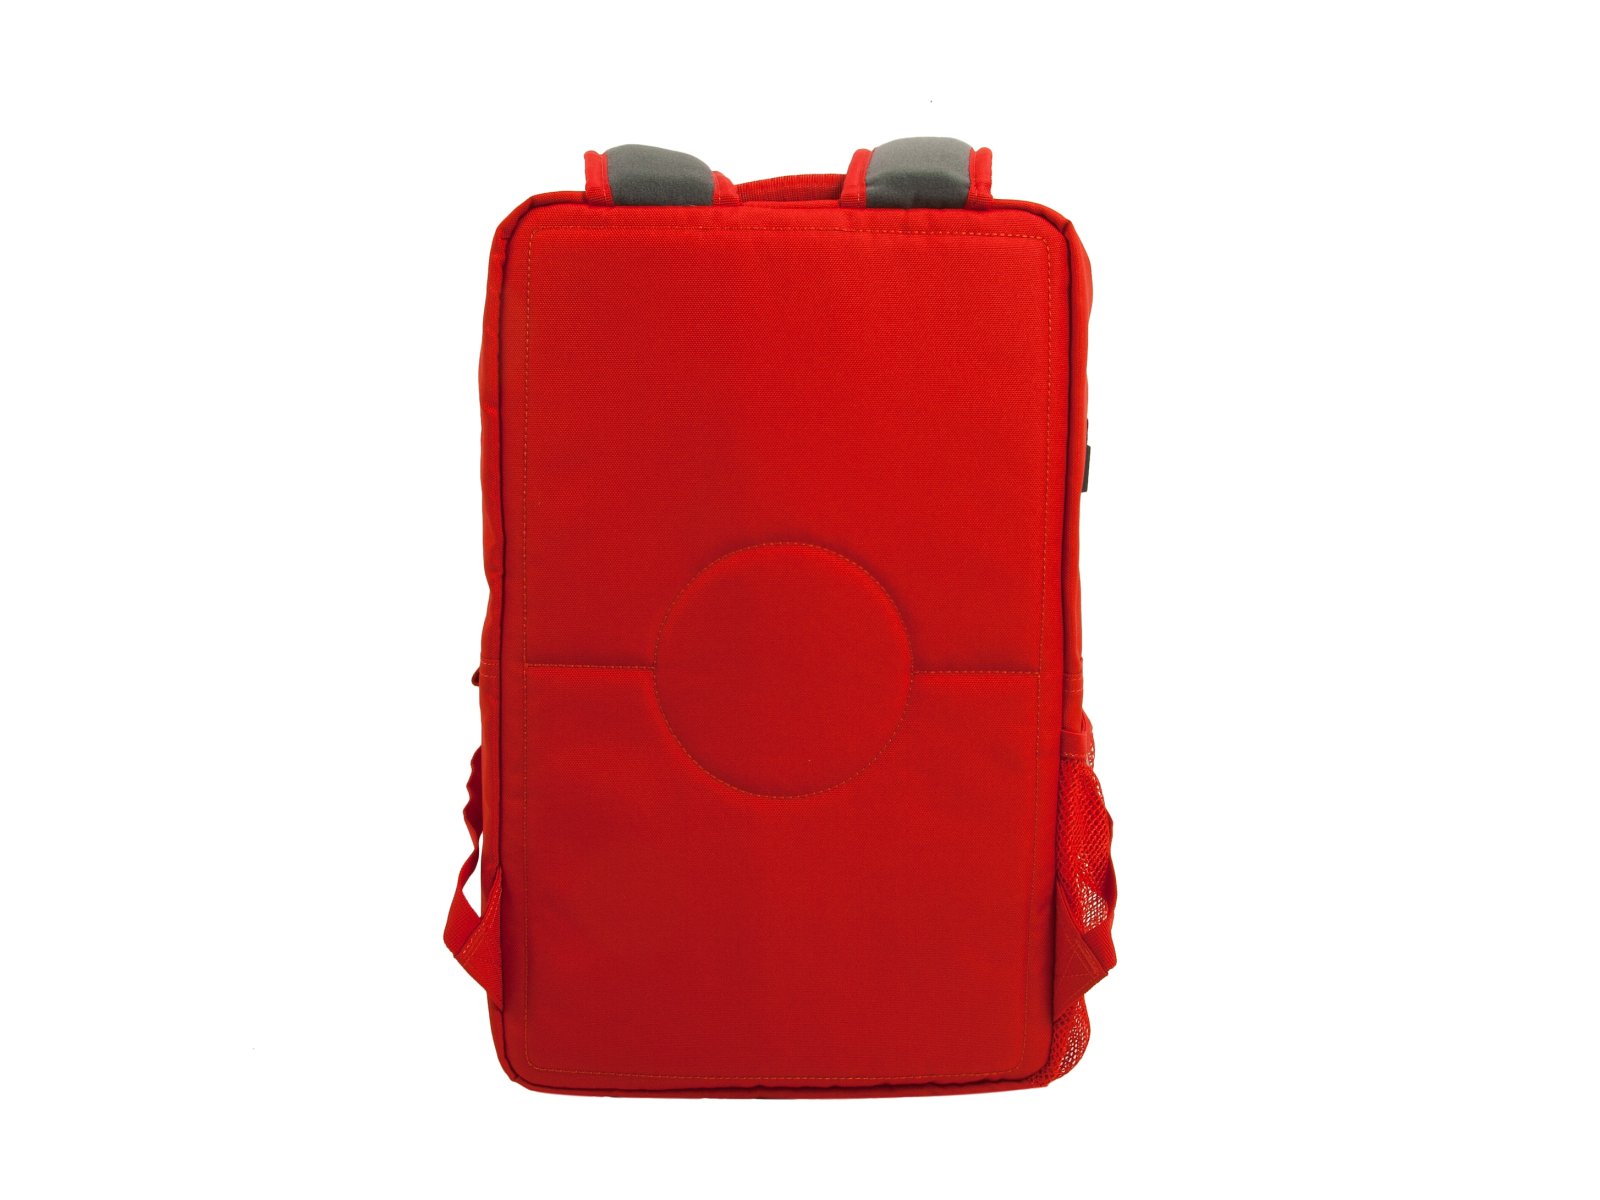 LEGO 5005536 Czerwony plecak w stylu klocka LEGO®